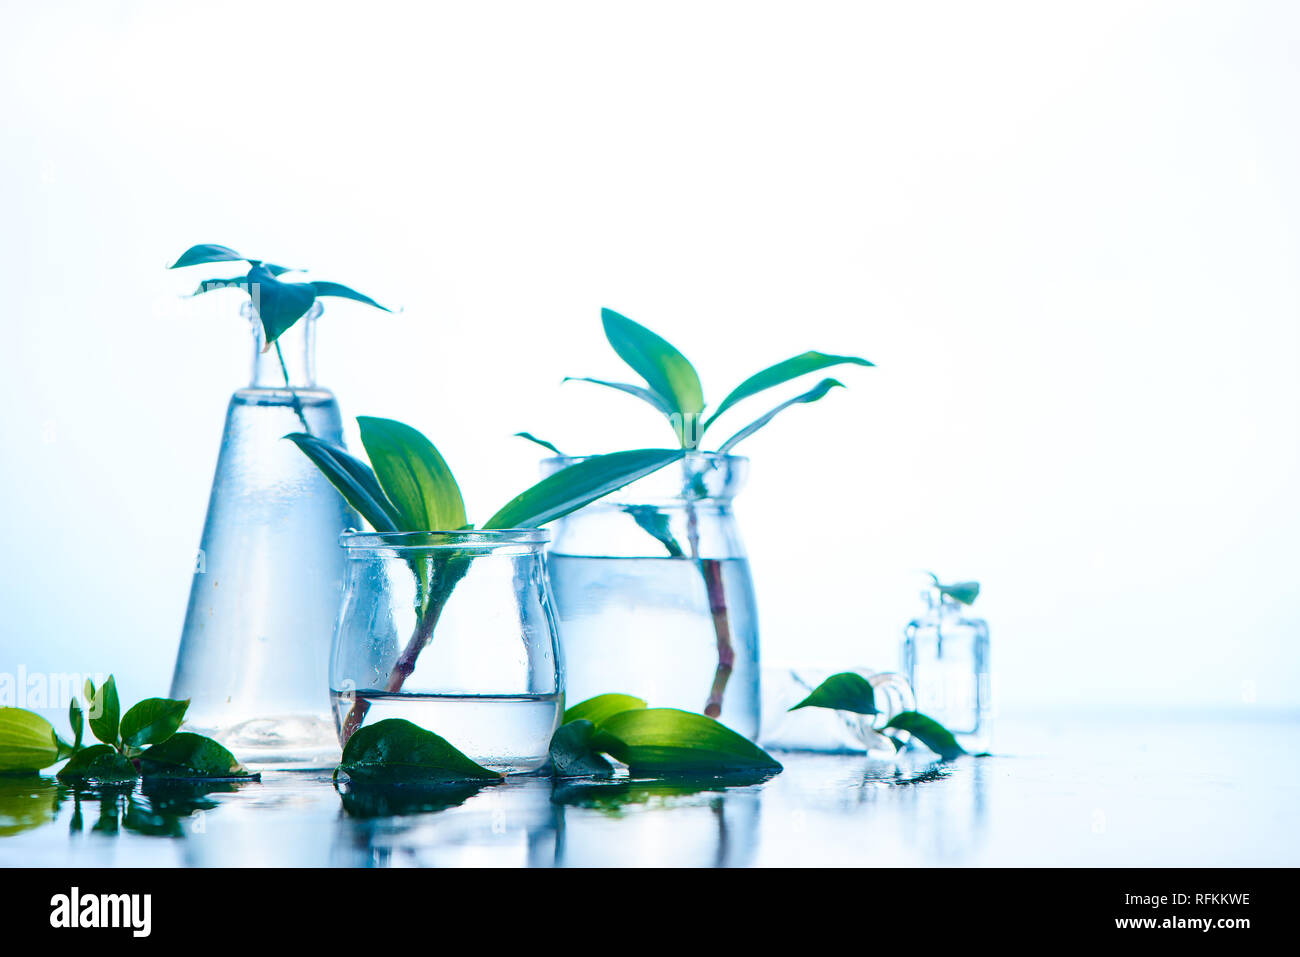 Les bocaux en verre et des vases avec des plantes de printemps vert. La clarté et la fraîcheur concept avec copie espace. Fond humide blanc Banque D'Images